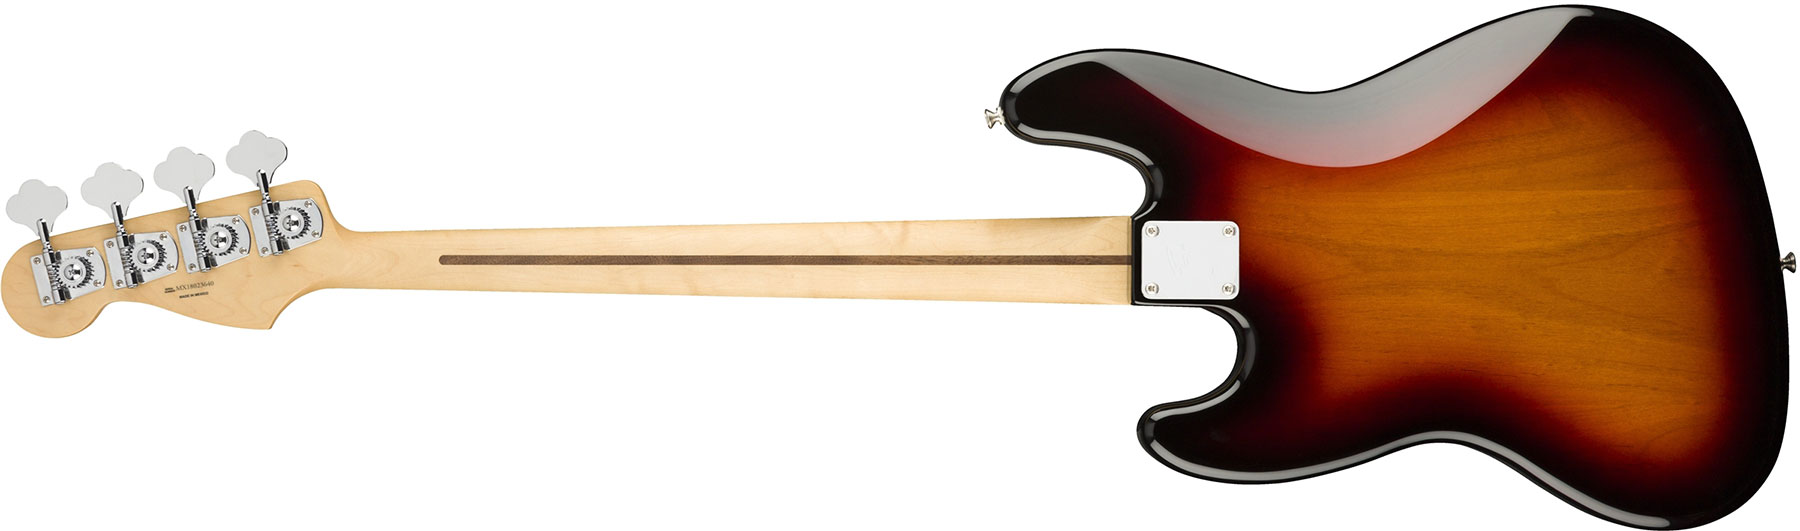 Fender Jazz Bass Player Mex Pf - 3-color Sunburst - Bajo eléctrico de cuerpo sólido - Variation 1